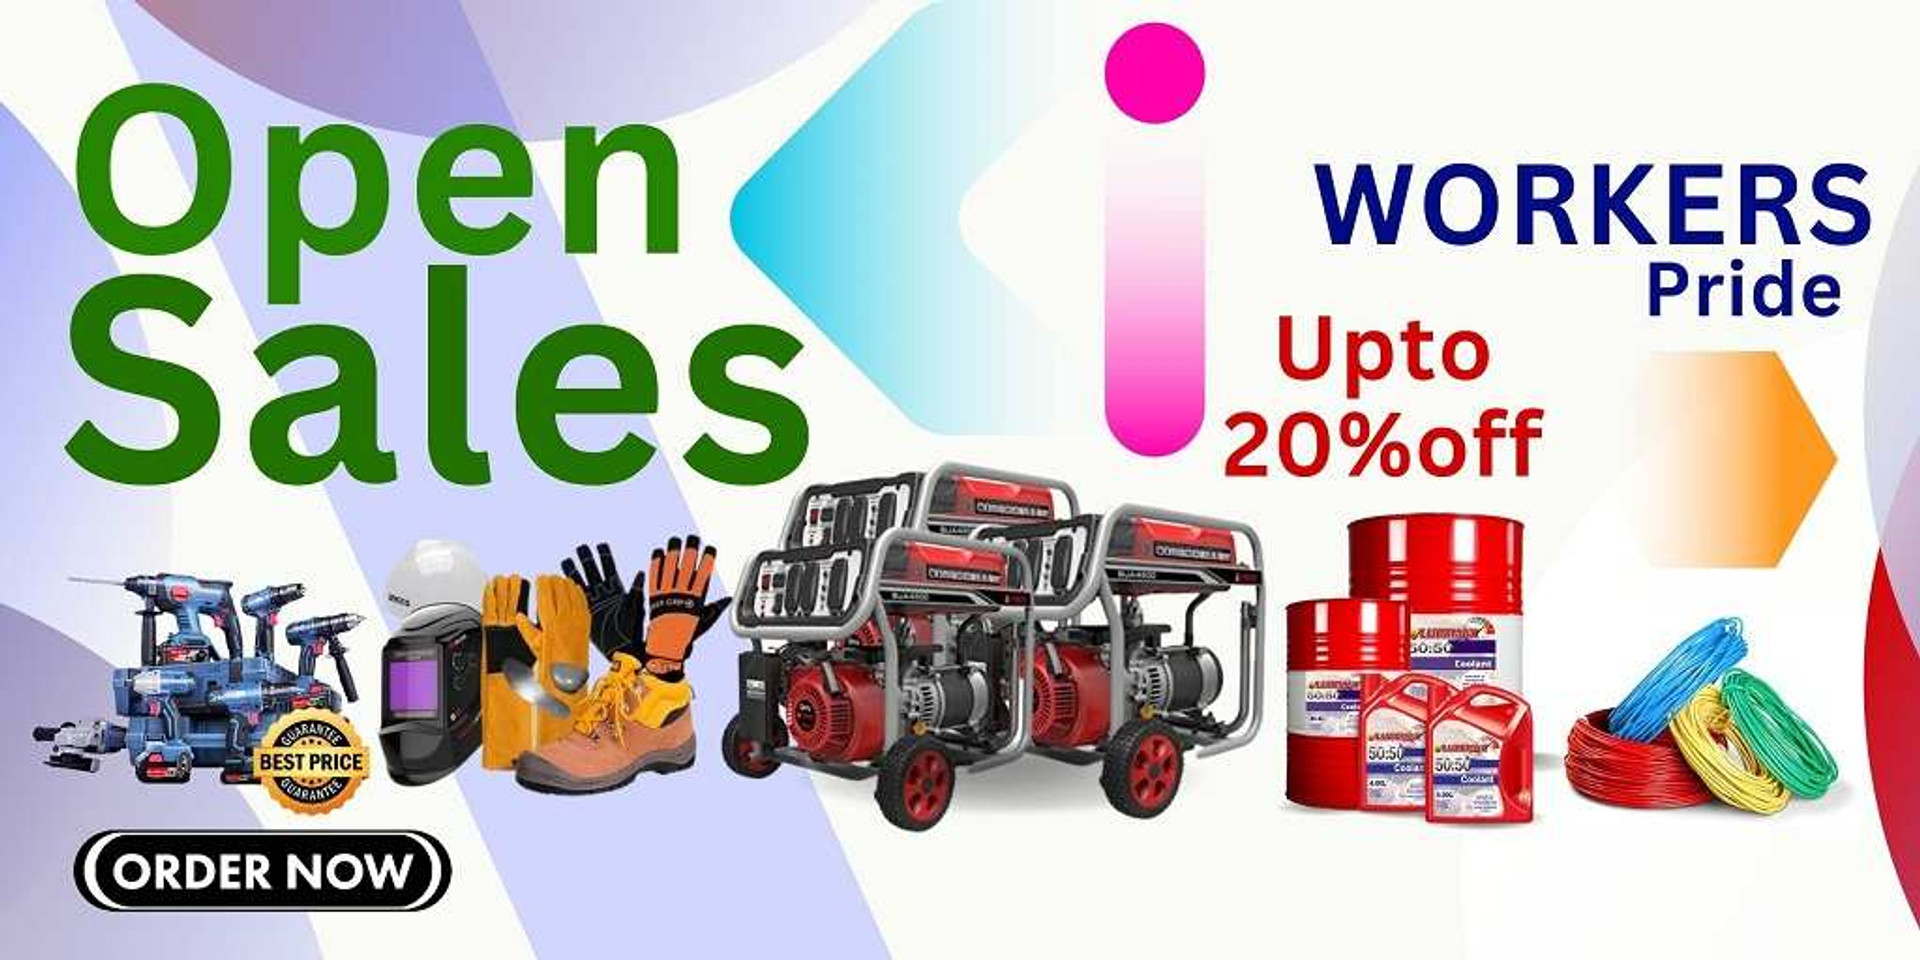 shop online Industrial supplies -Gz Industrial supplies Nigeria